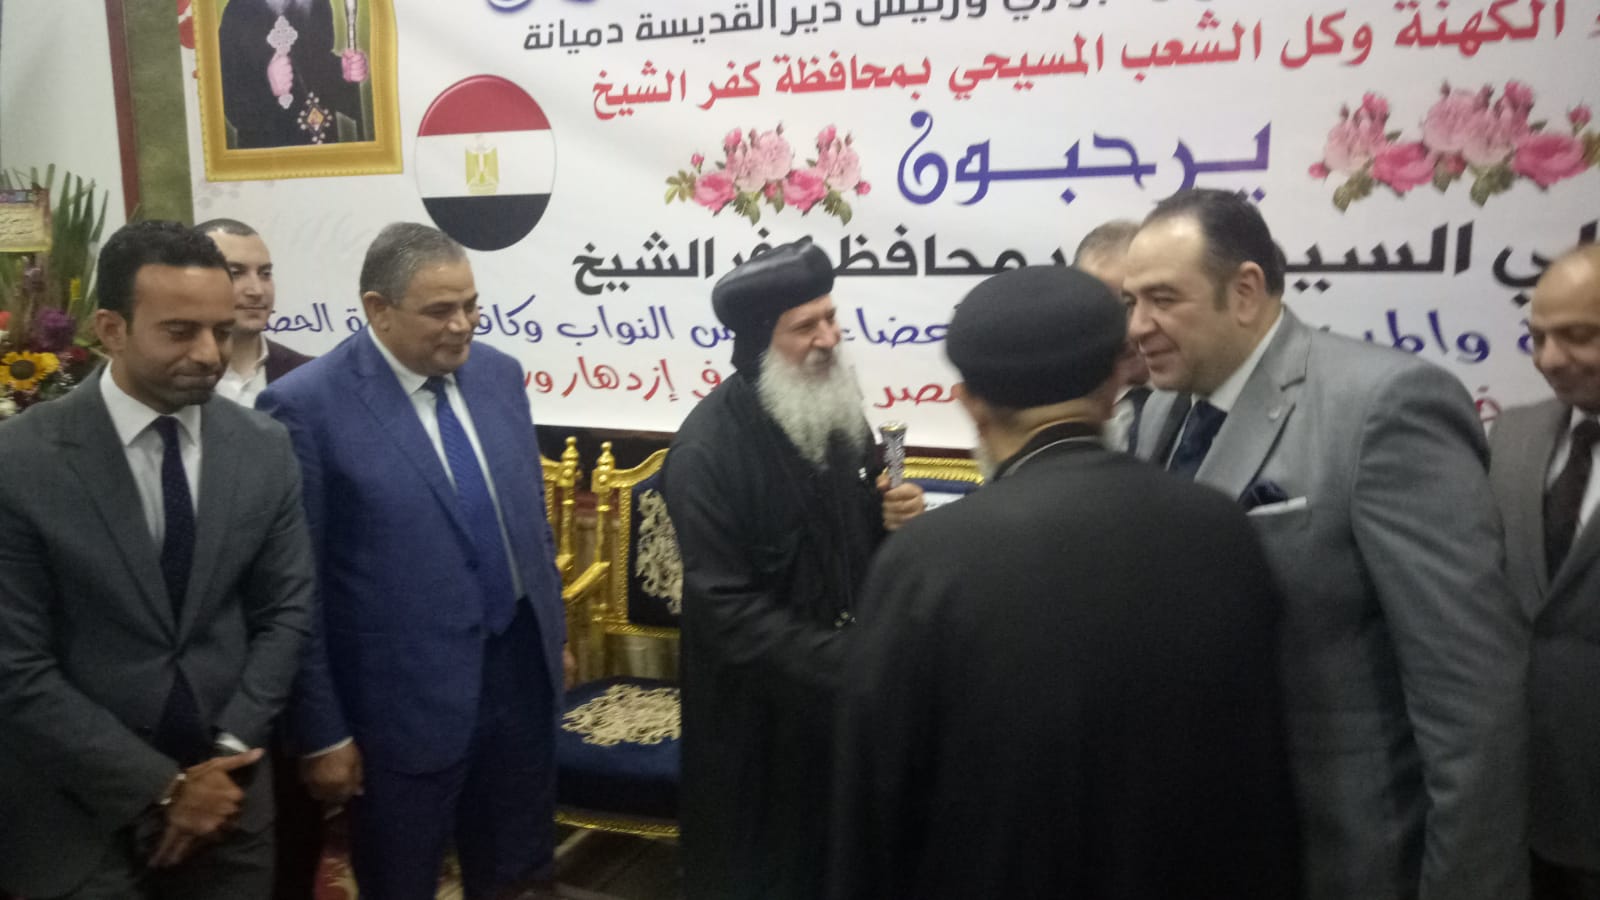 رئيس جامعة كفر الشيخ يقدم التهنئة بعيد القيامة